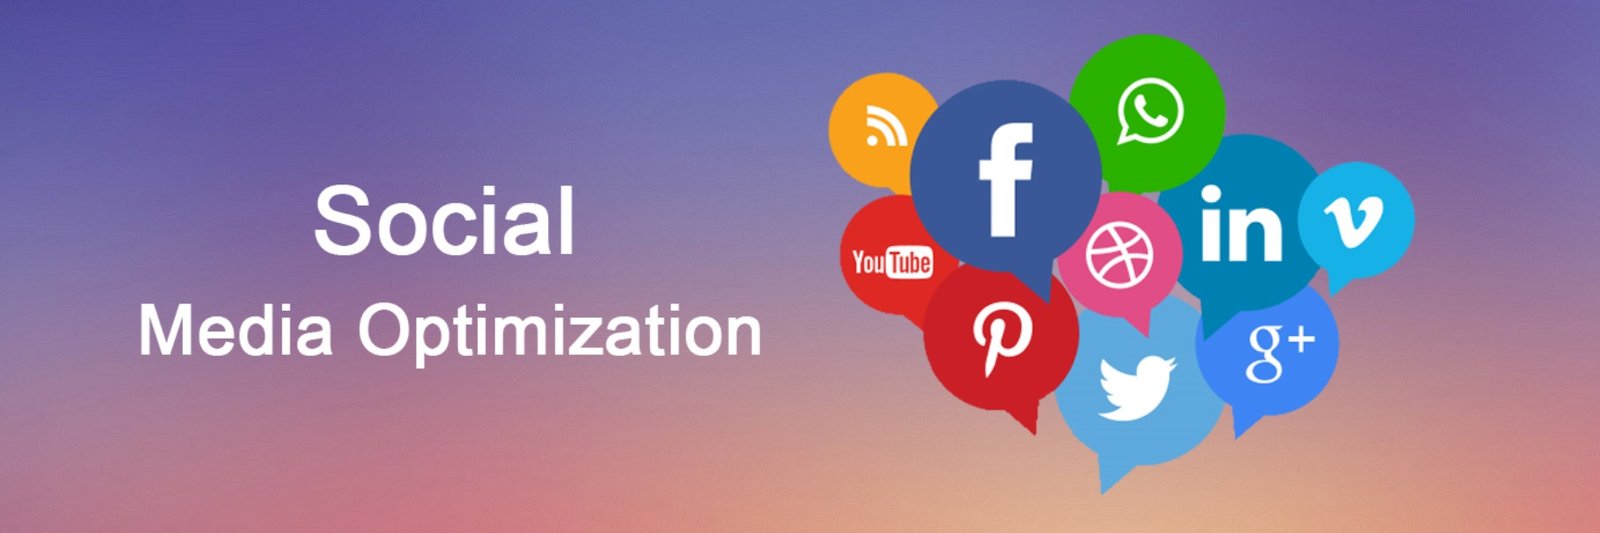 social media optimization agency in india